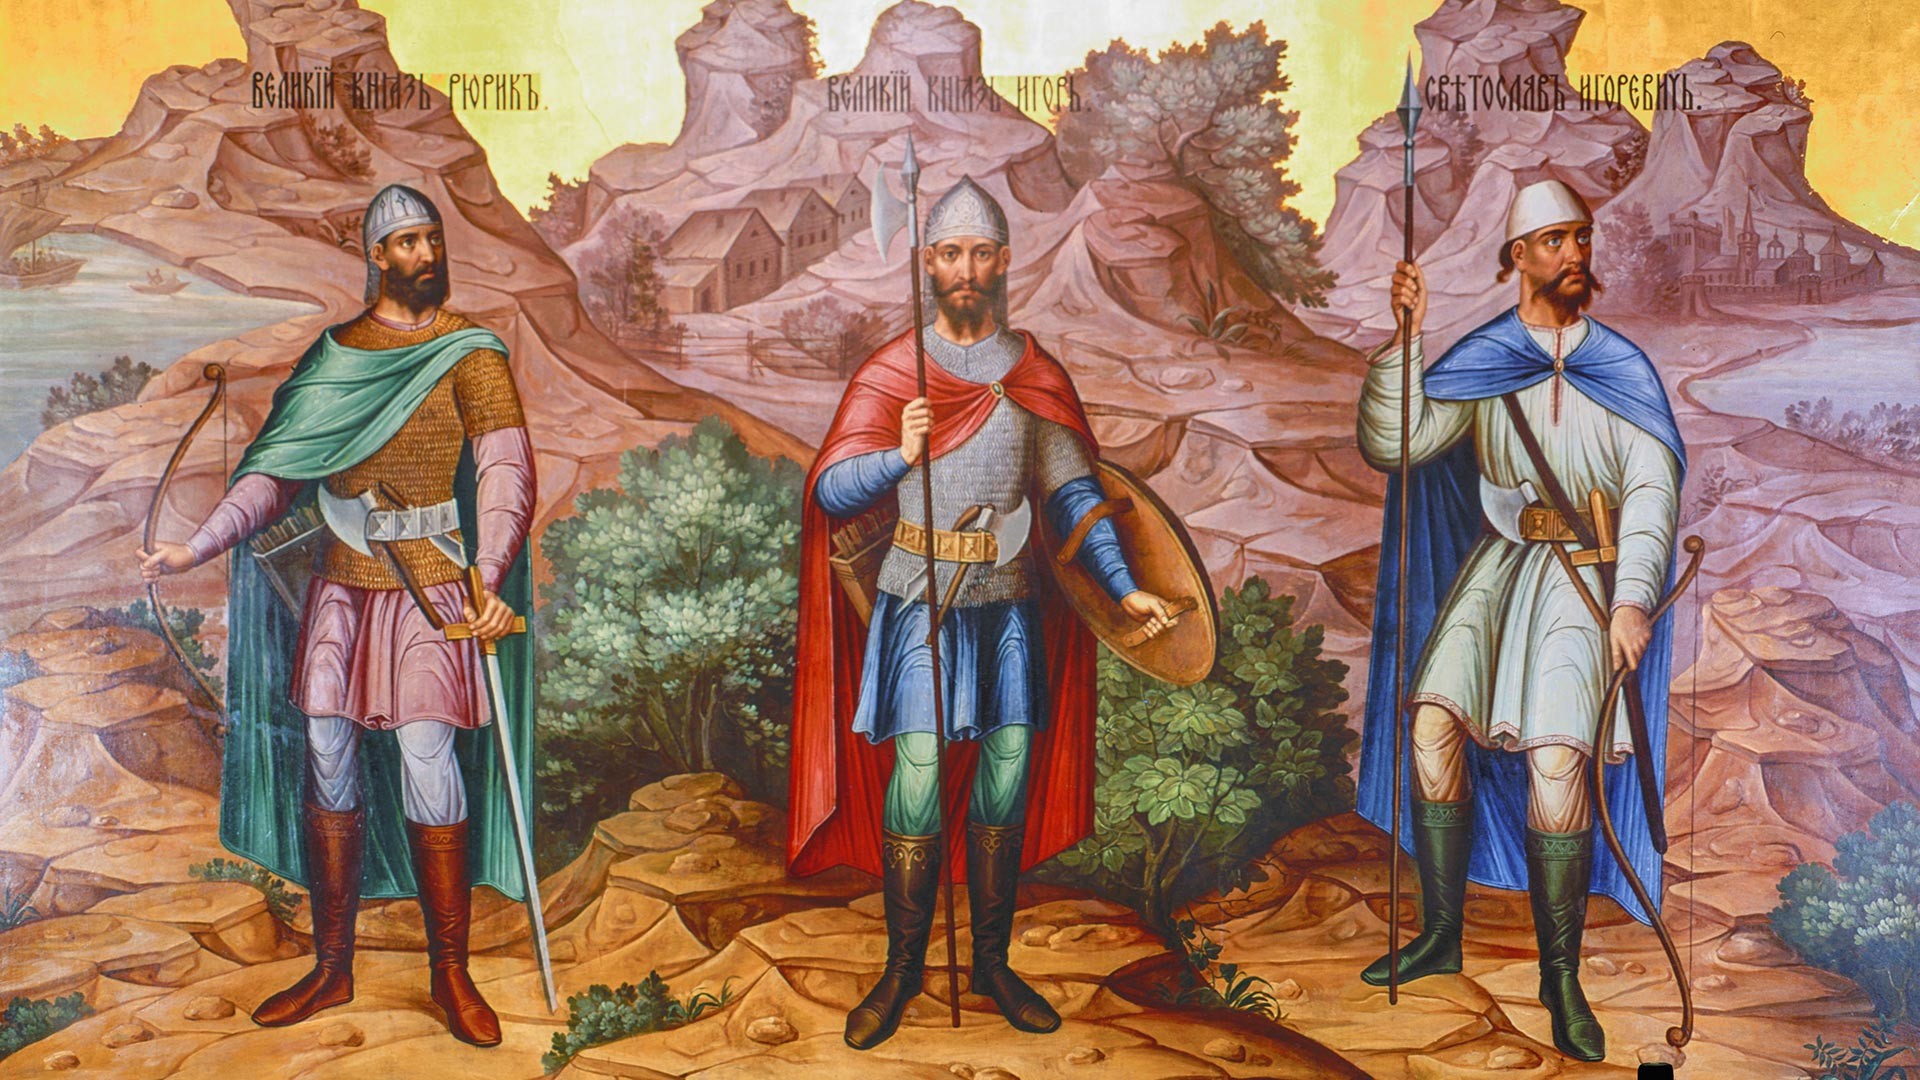 Veliki knez Rjurik, veliki knez Igor in Igor Svjatoslavovič. Reprodukcija fragmenta stenske freske v Kremlju